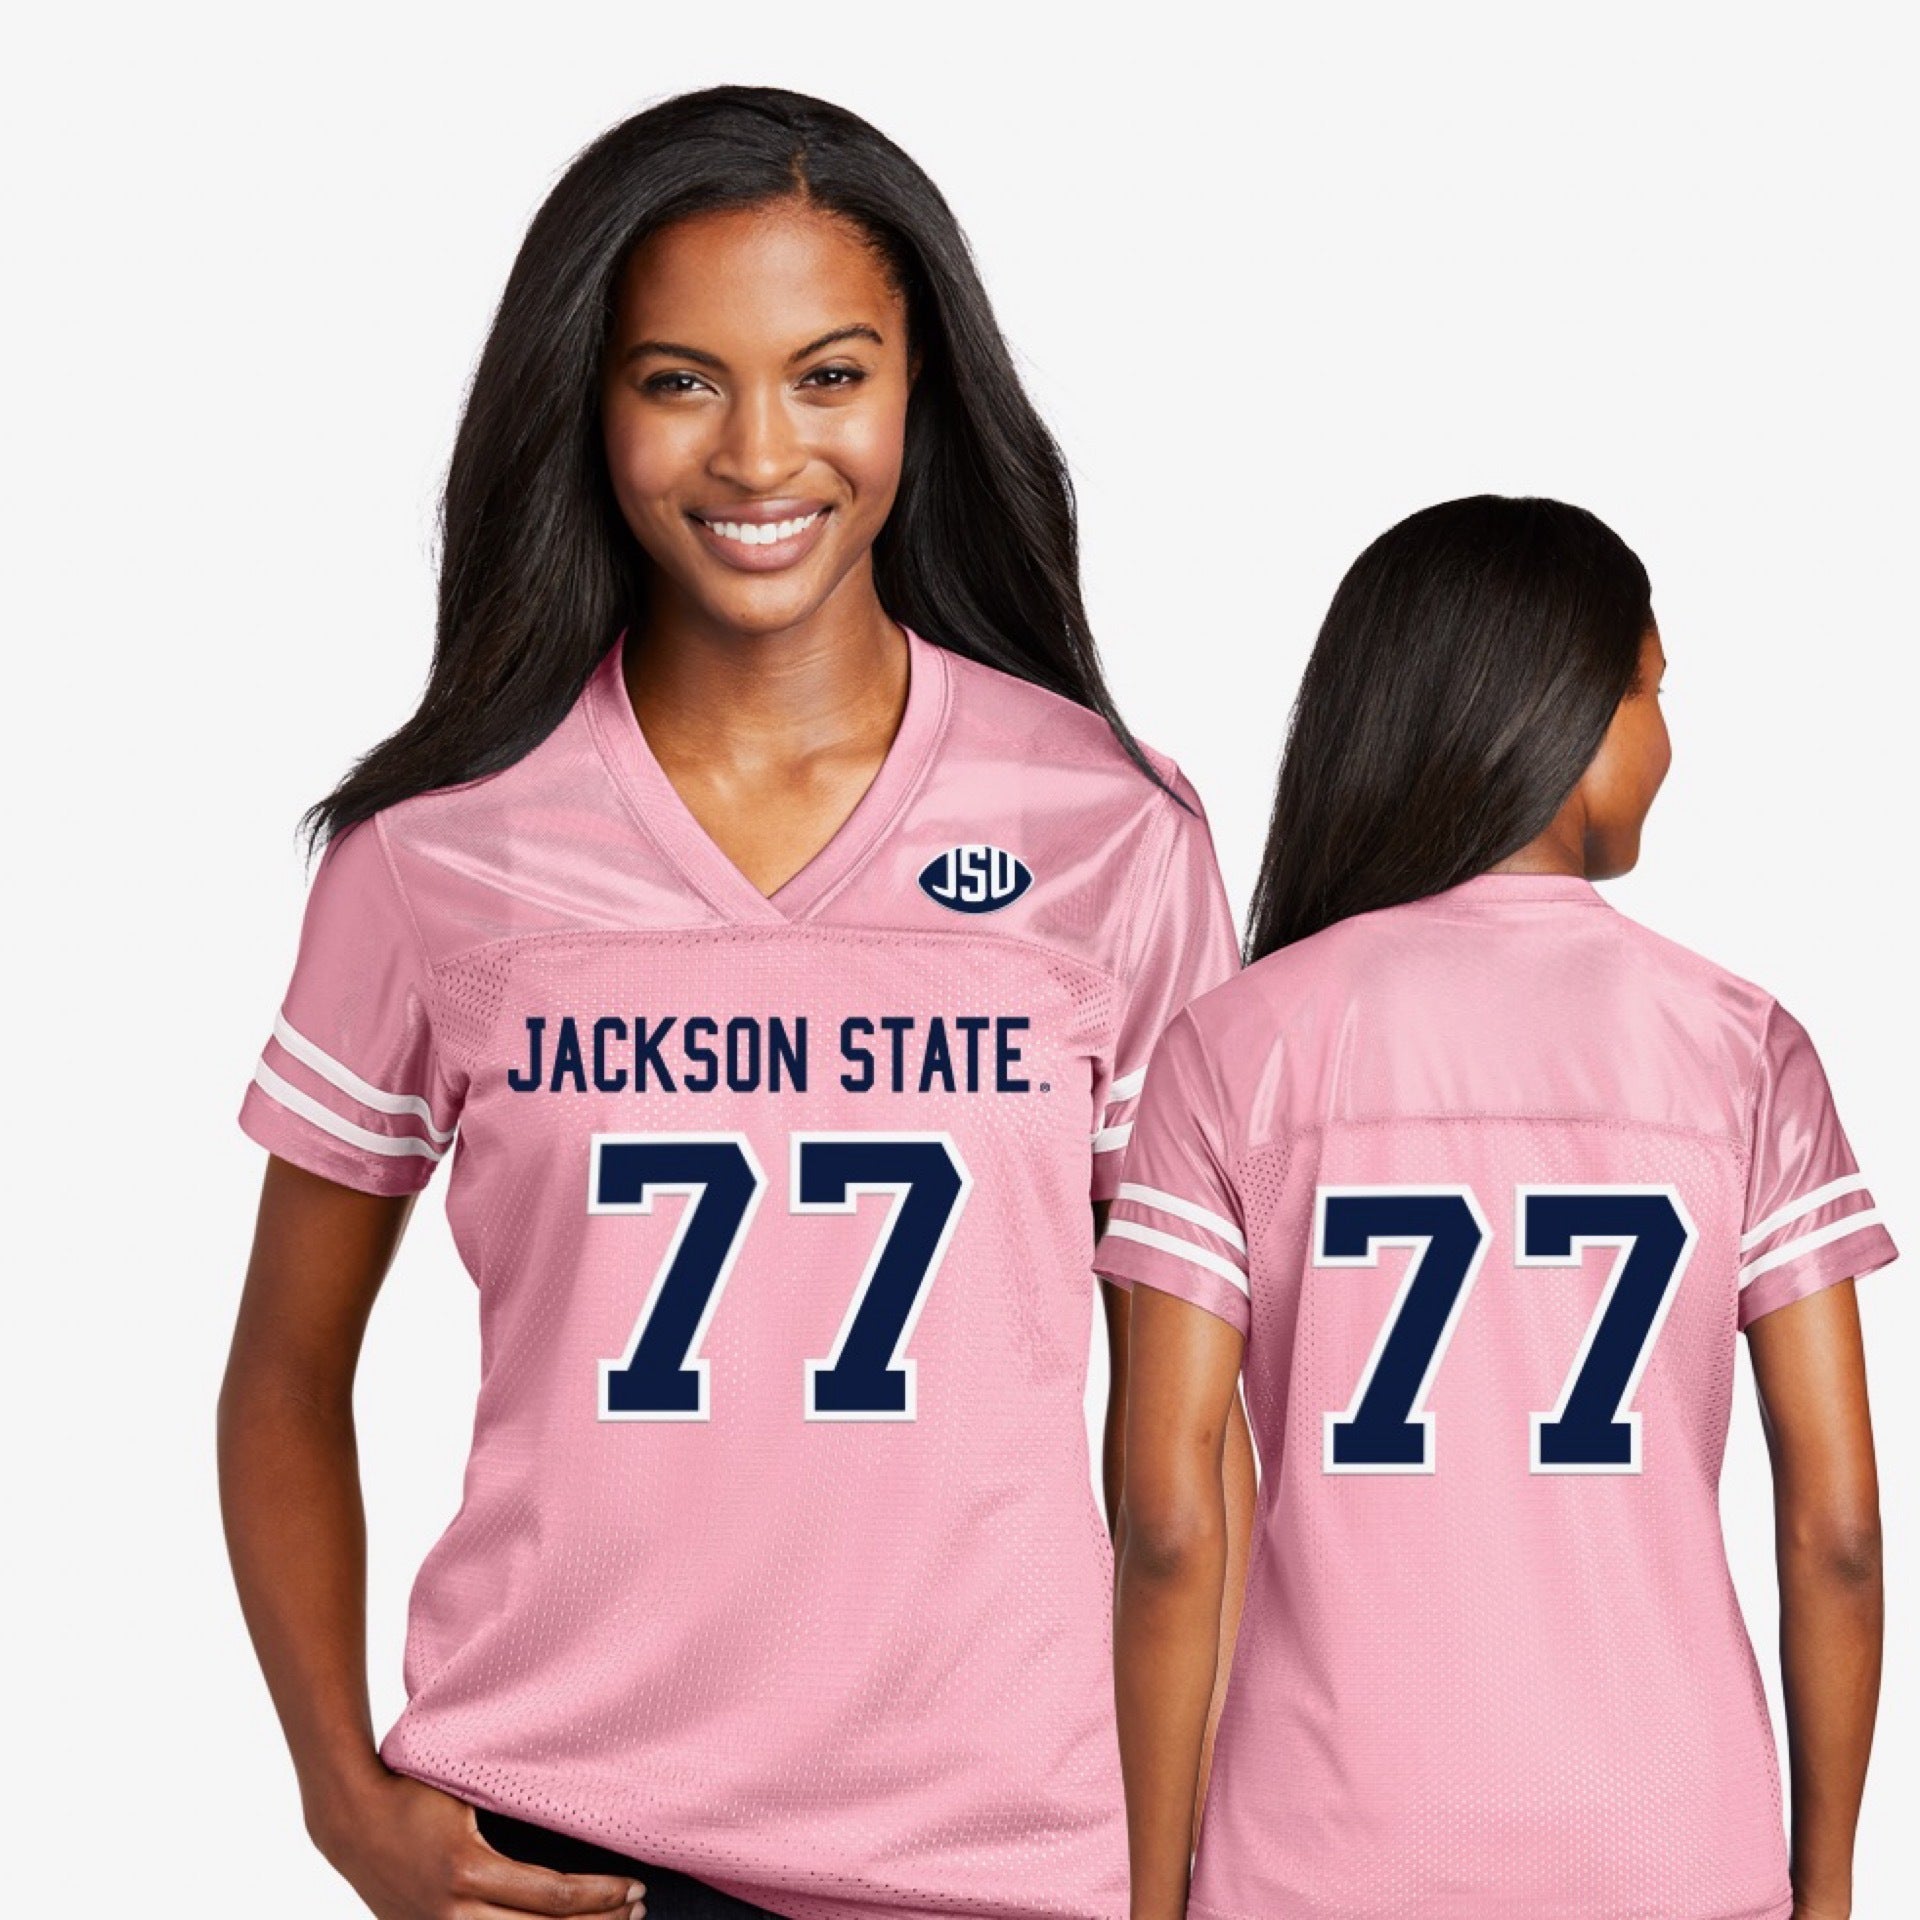 womens pink football jerseys